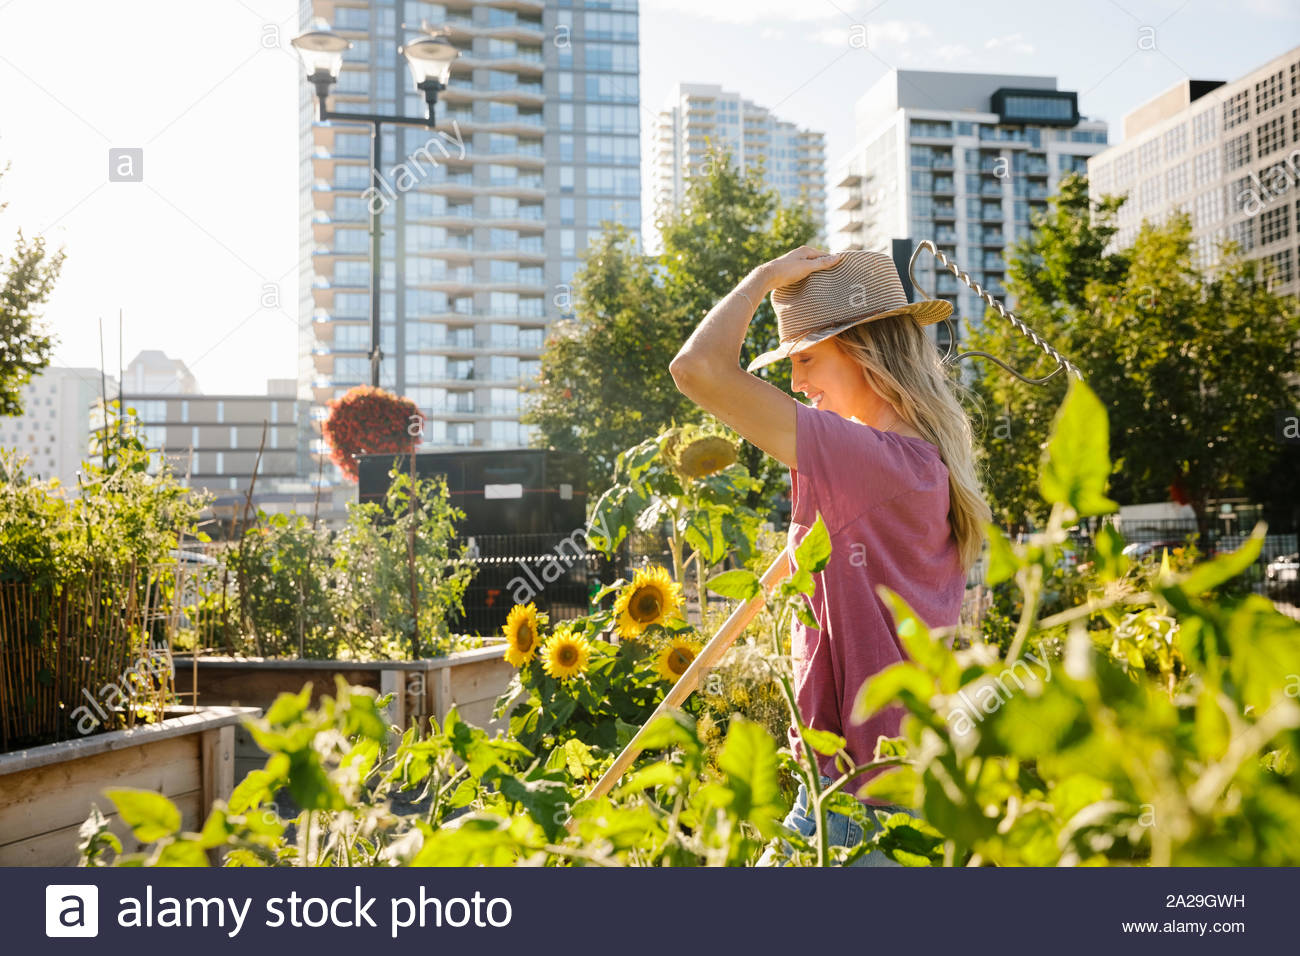 Glückliche junge Frau mit Sonnenhut in sonniger, städtischen Gemeinschaft garten Stockfoto